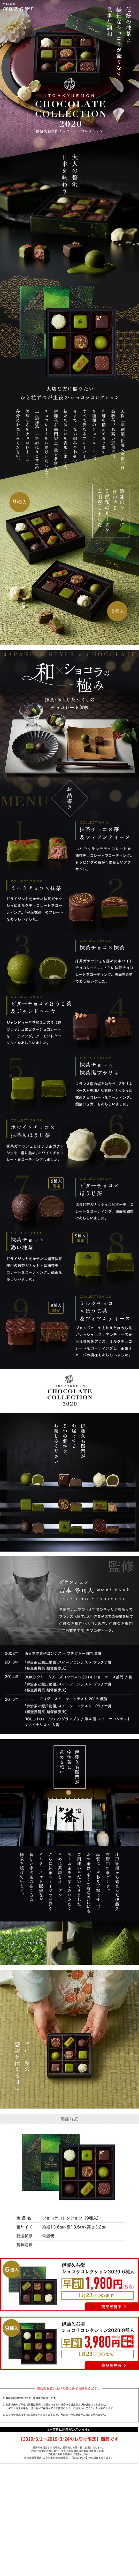 伊藤久右衛門 チョコレートコレクション